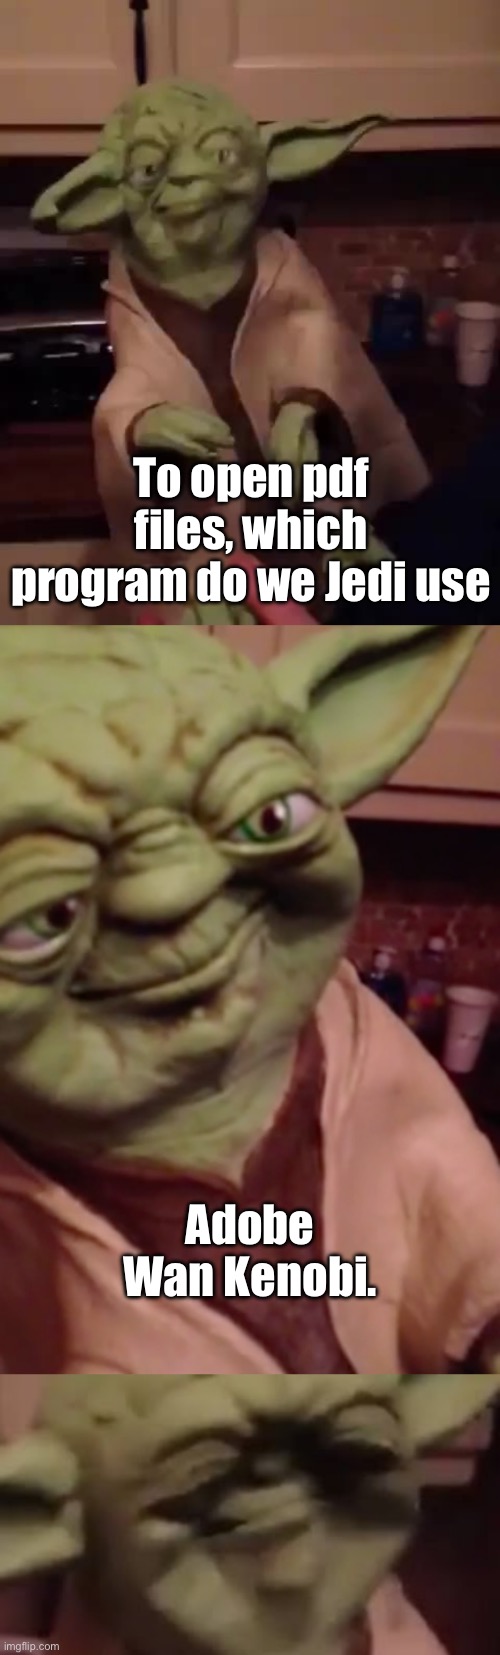 Punny, it is | To open pdf files, which program do we Jedi use; Adobe Wan Kenobi. | image tagged in yoda bad joke,bad pun,adobe,obi wan kenobi | made w/ Imgflip meme maker